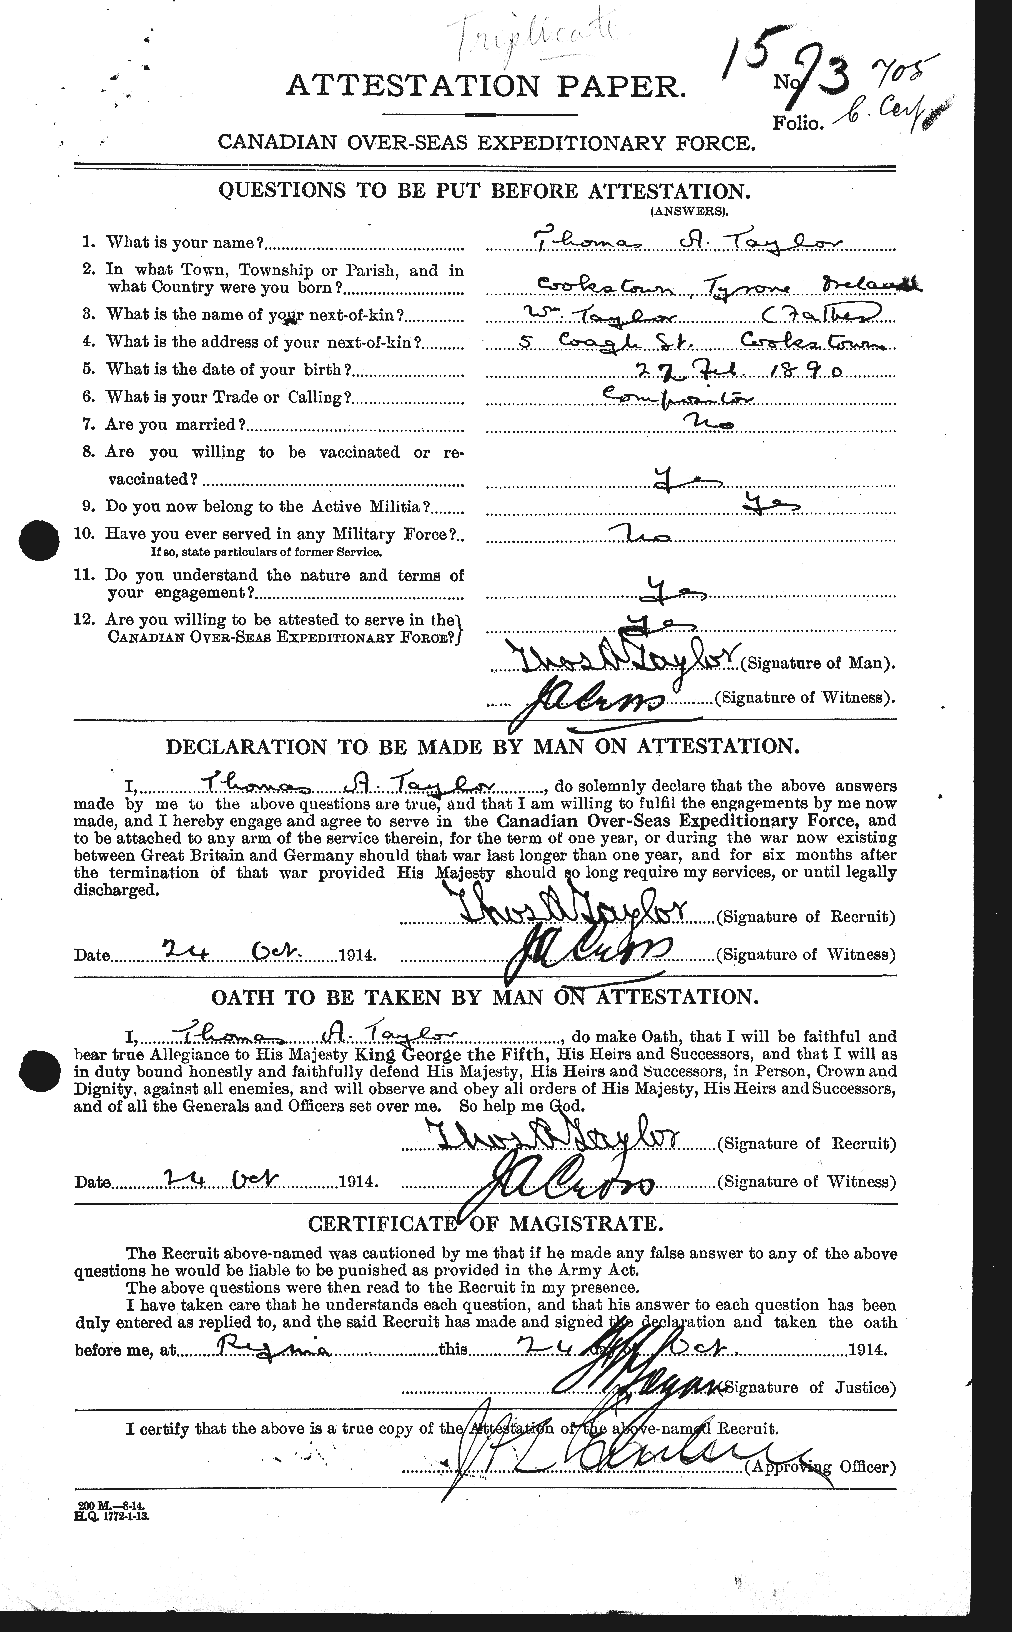 Dossiers du Personnel de la Première Guerre mondiale - CEC 627966a